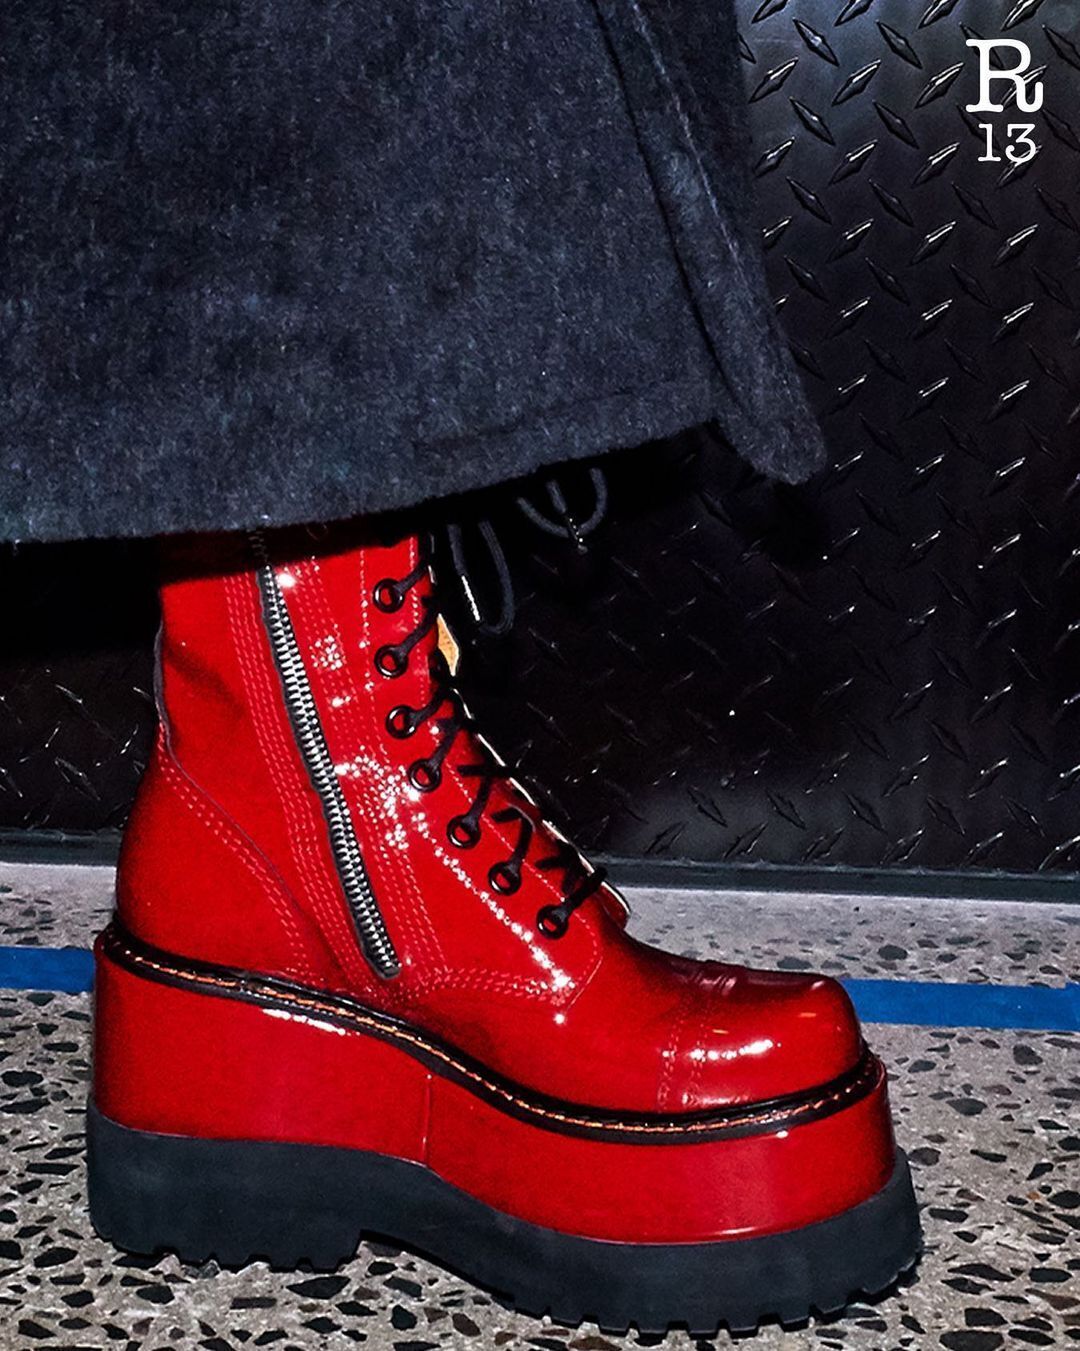 Красные грубые ботинки со шнуровкой на высокой подошве от R13.